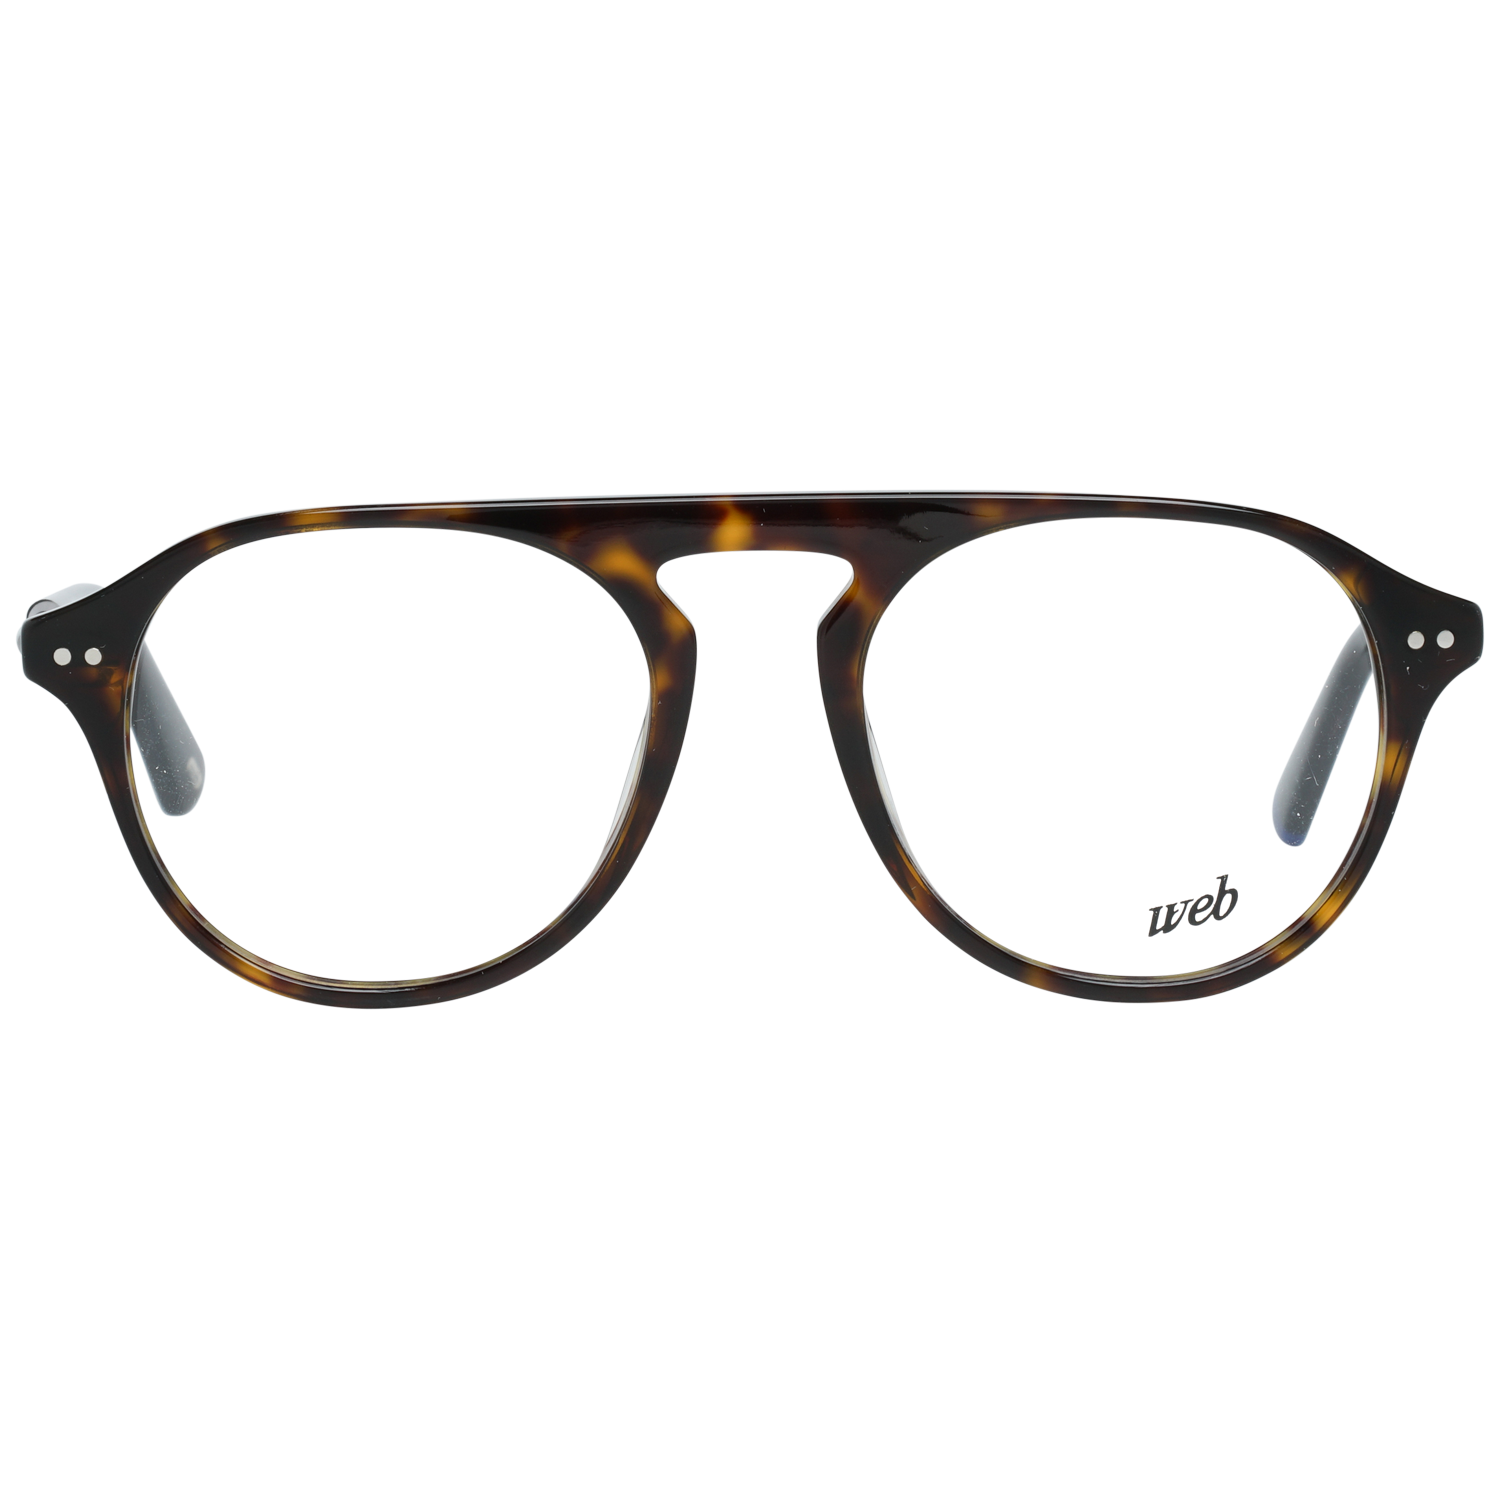 Web Frames Web Glasses Optical Frame WE5278 052 49 Eyeglasses Eyewear UK USA Australia 